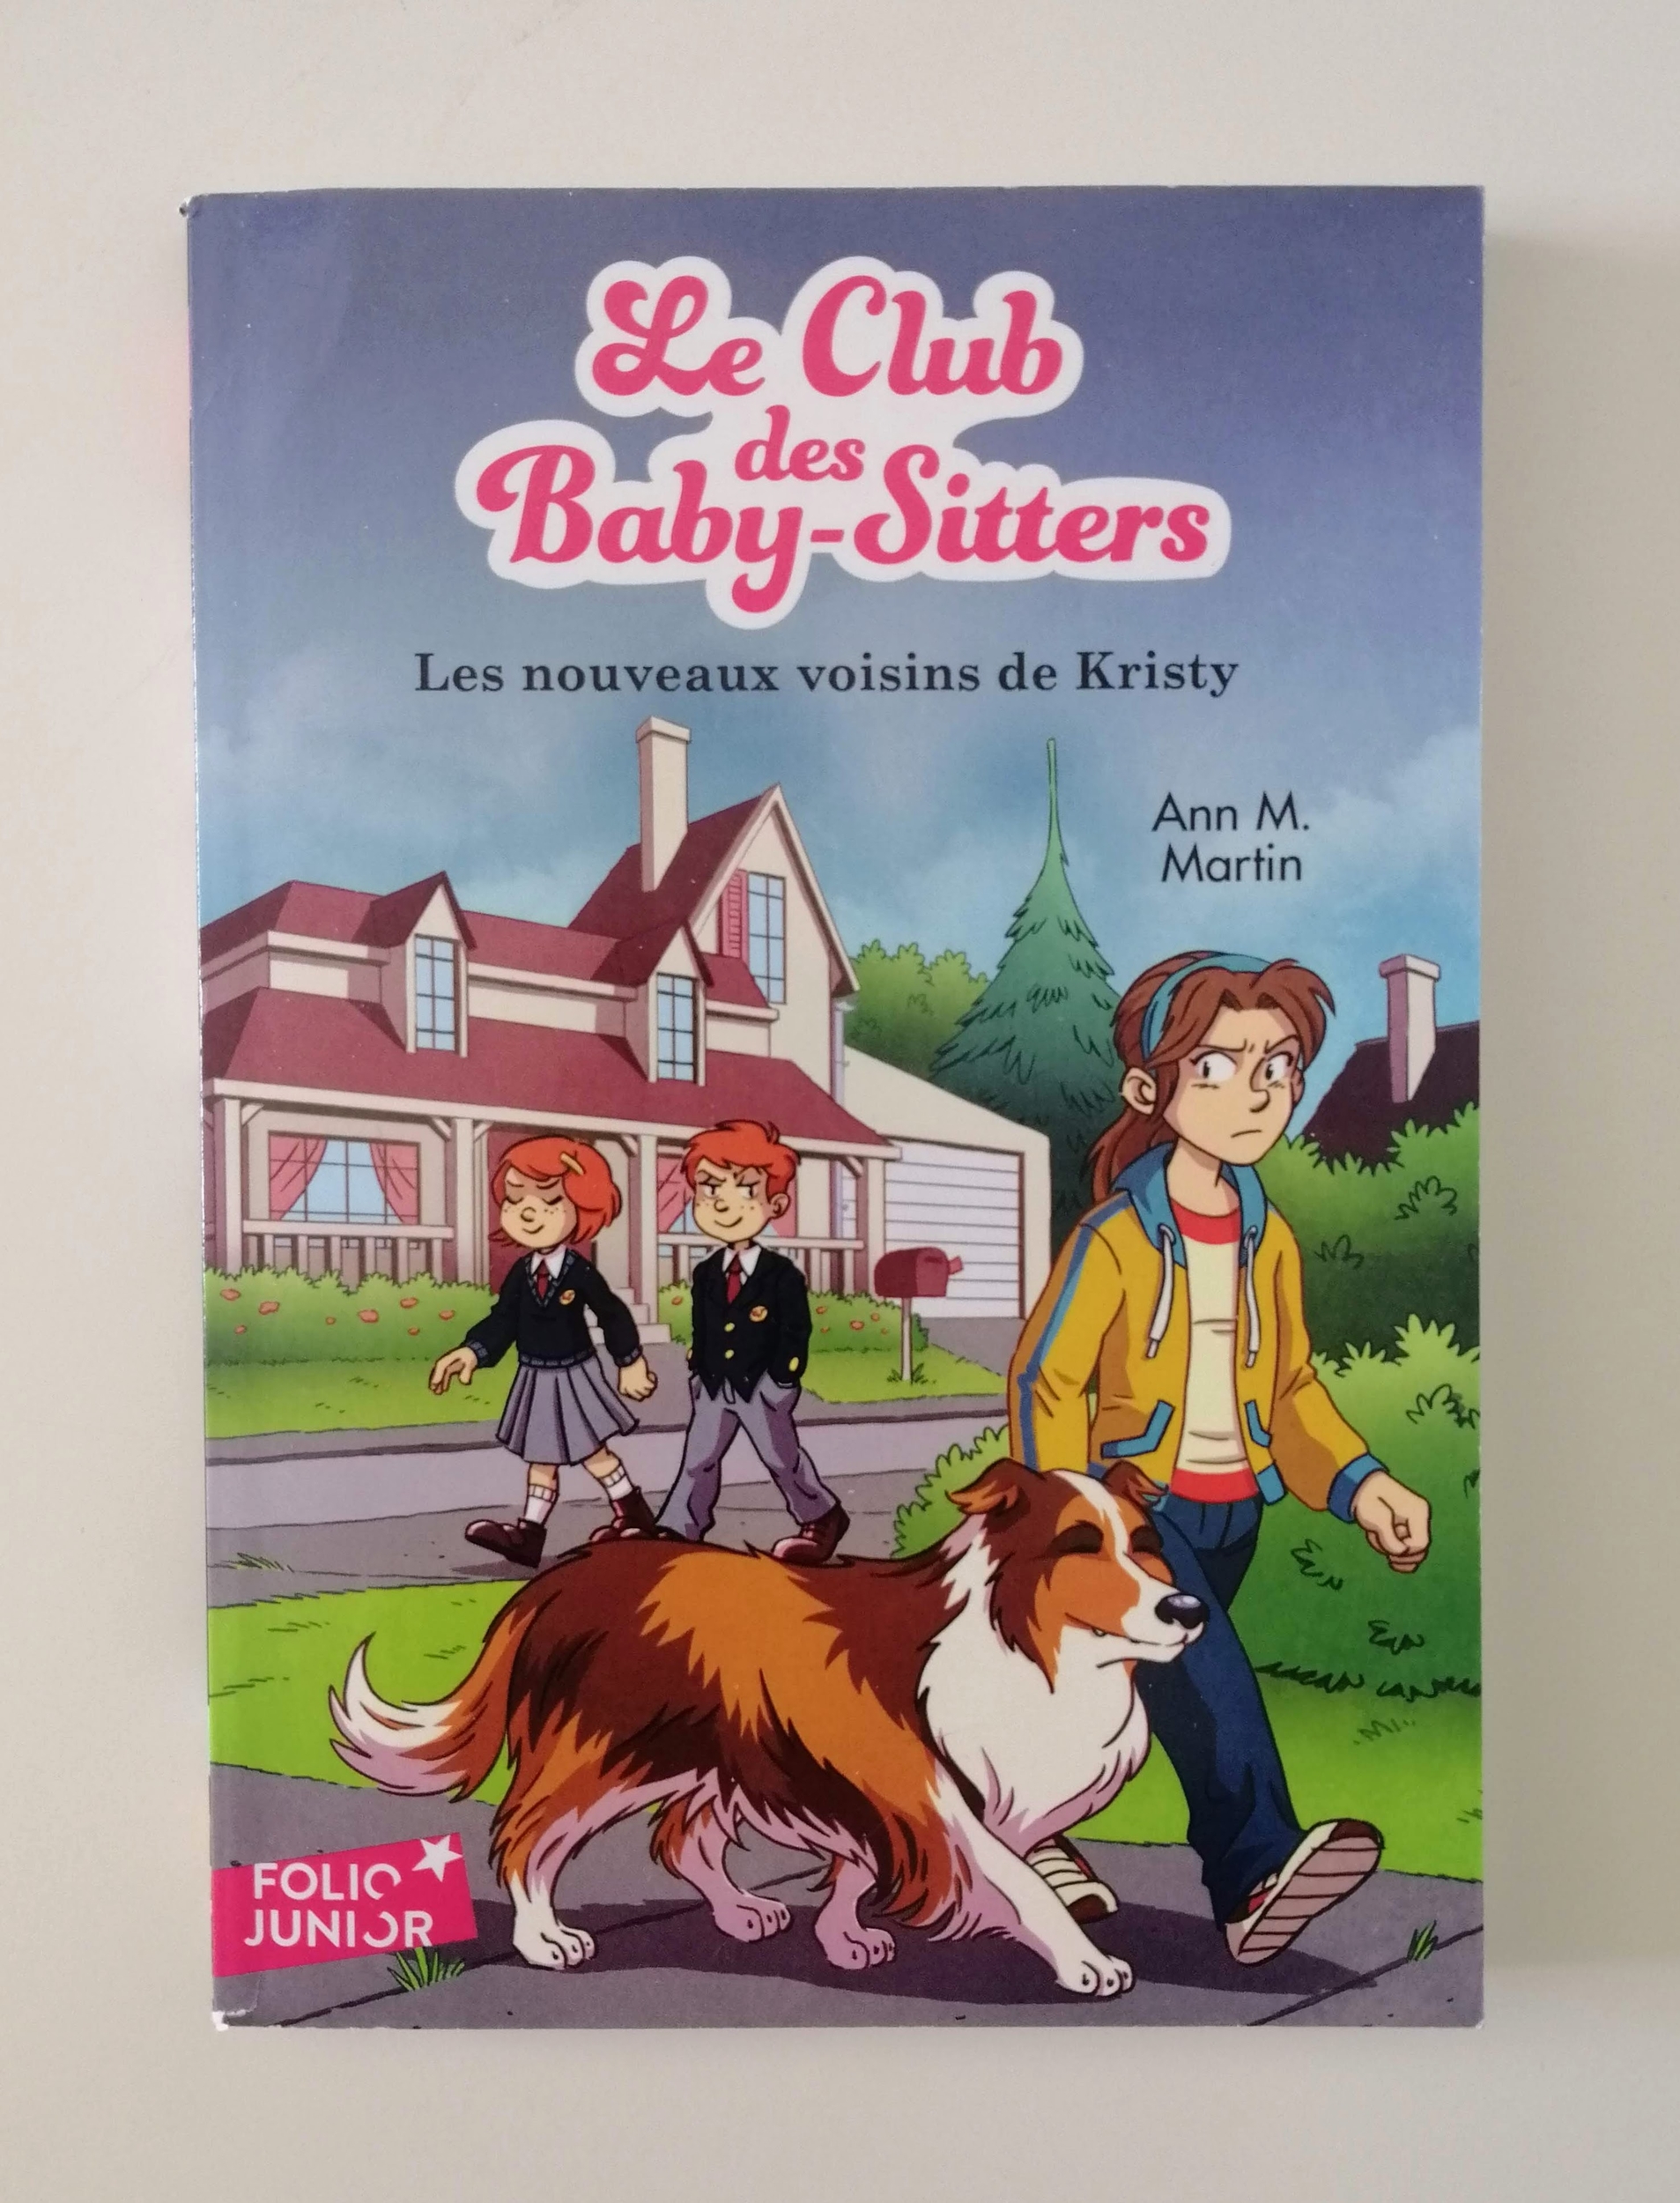 Le club des baby-sitters - Les nouveaux voisins de Kristy (Ann M. Martin)